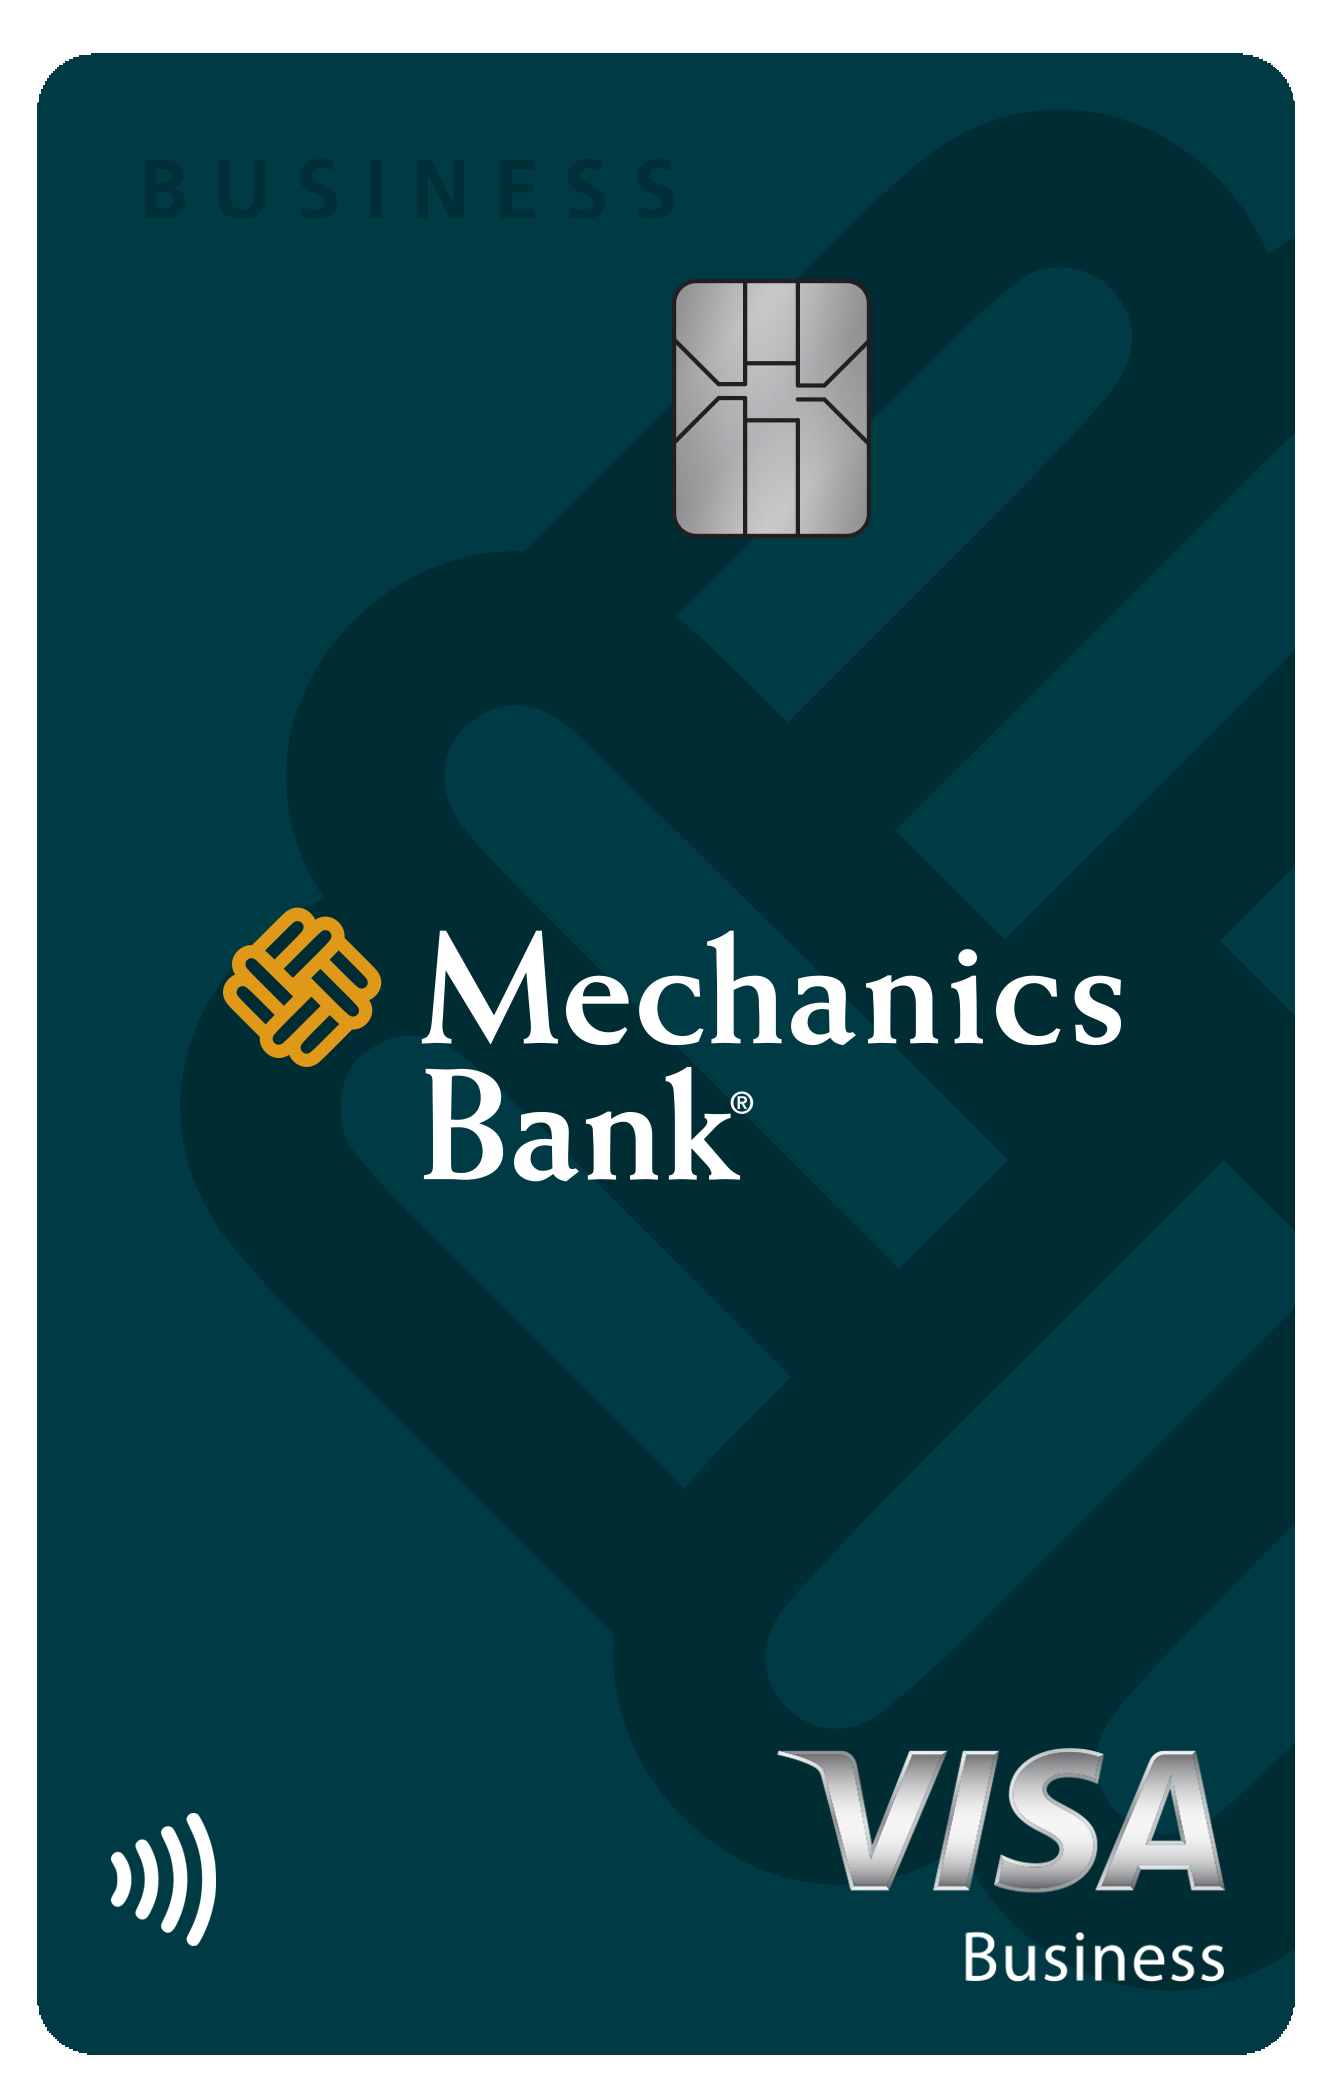 Mechanics Bank Business Card